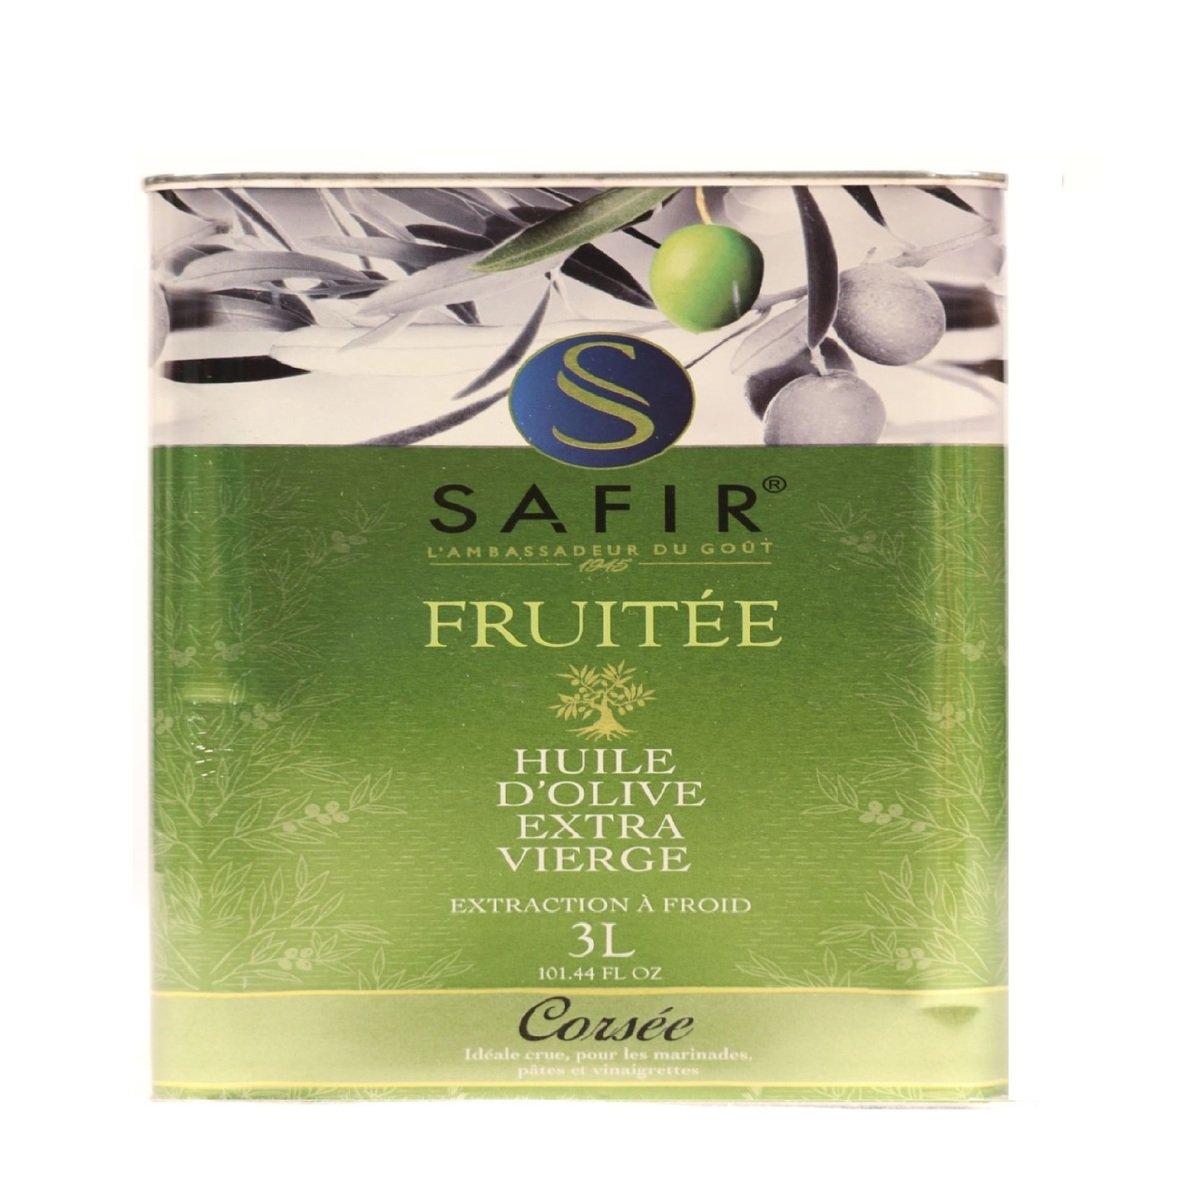 Safir Fruitee Extra Virgin Olive Oil 3Litre